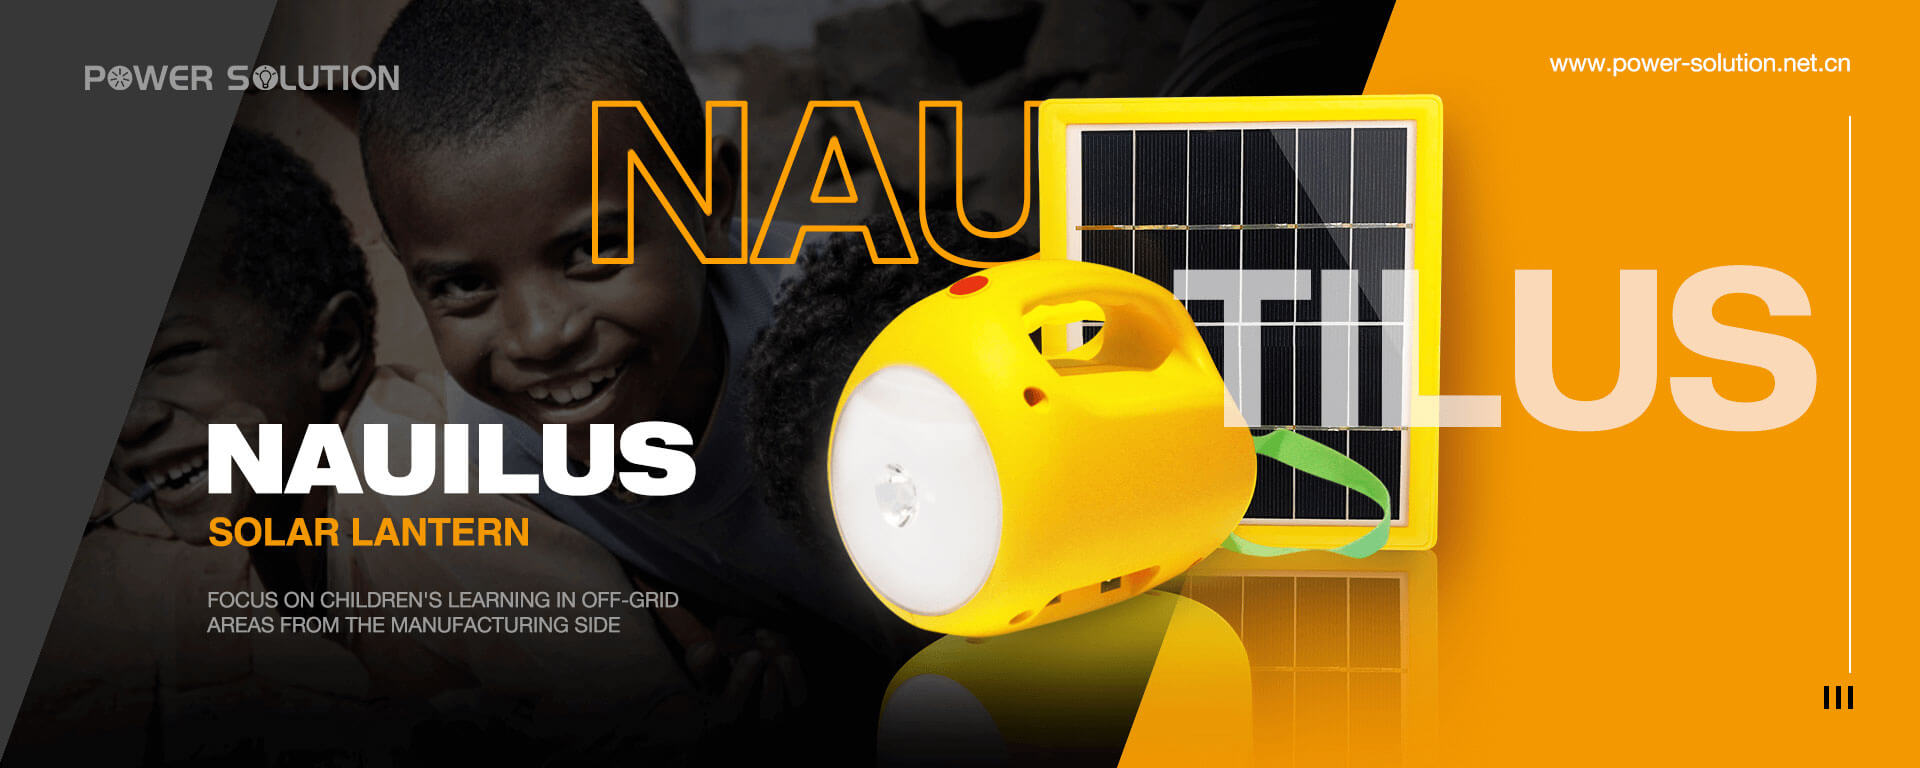 Banner de lanterna solar Nautilus de solução de energia